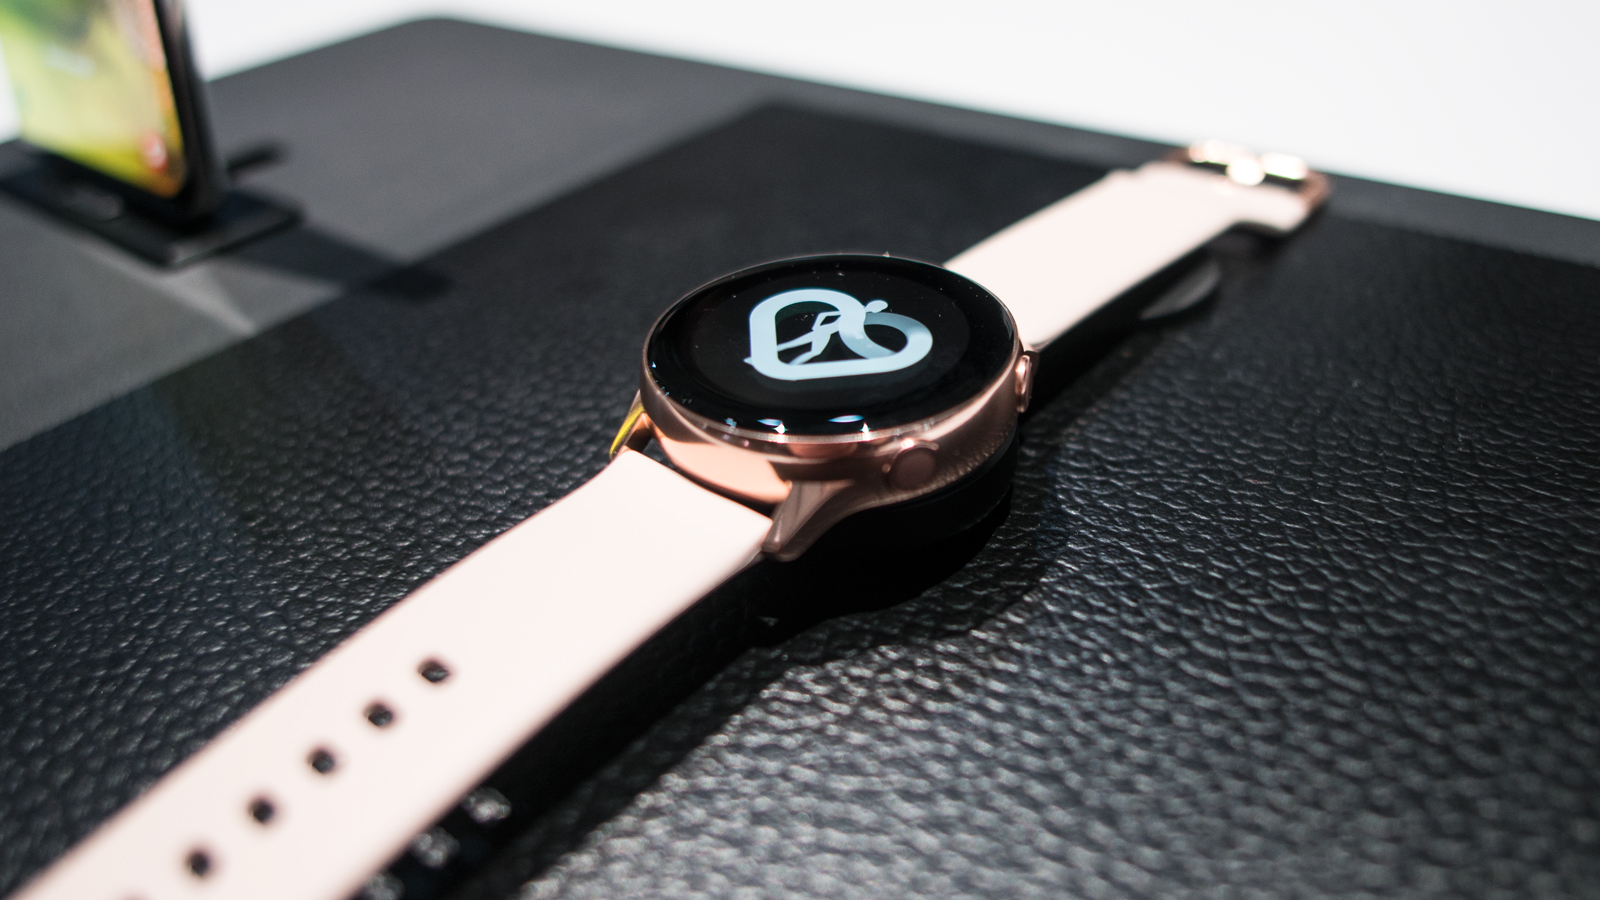 Главный конкурент Apple Watch Series 4: смарт-часы Samsung Galaxy Watch Active 2 будут делать ЭКГ